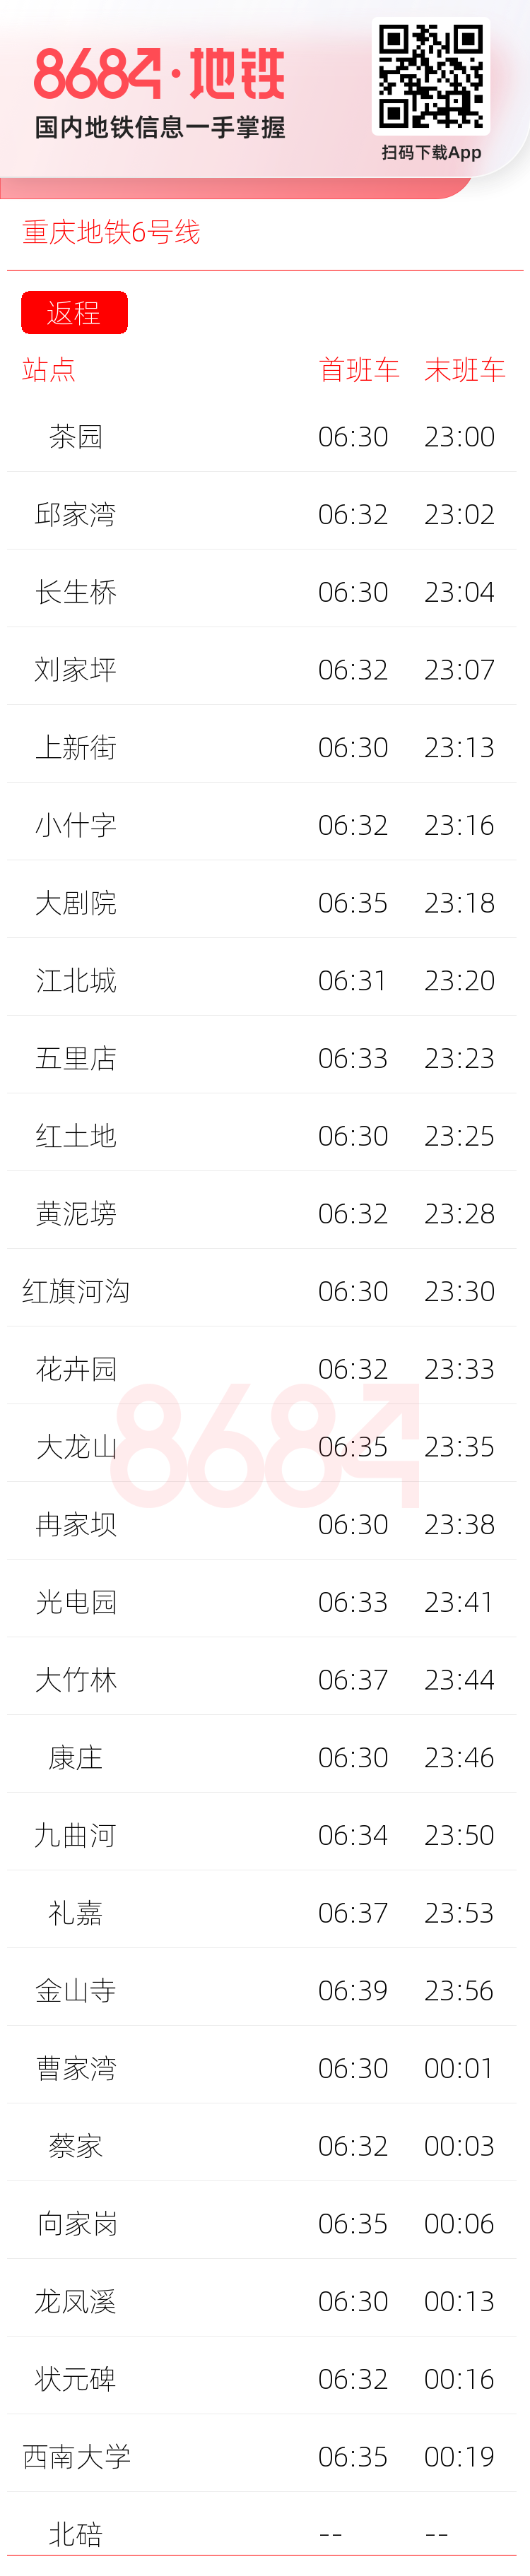 重庆地铁6号线运营时间表